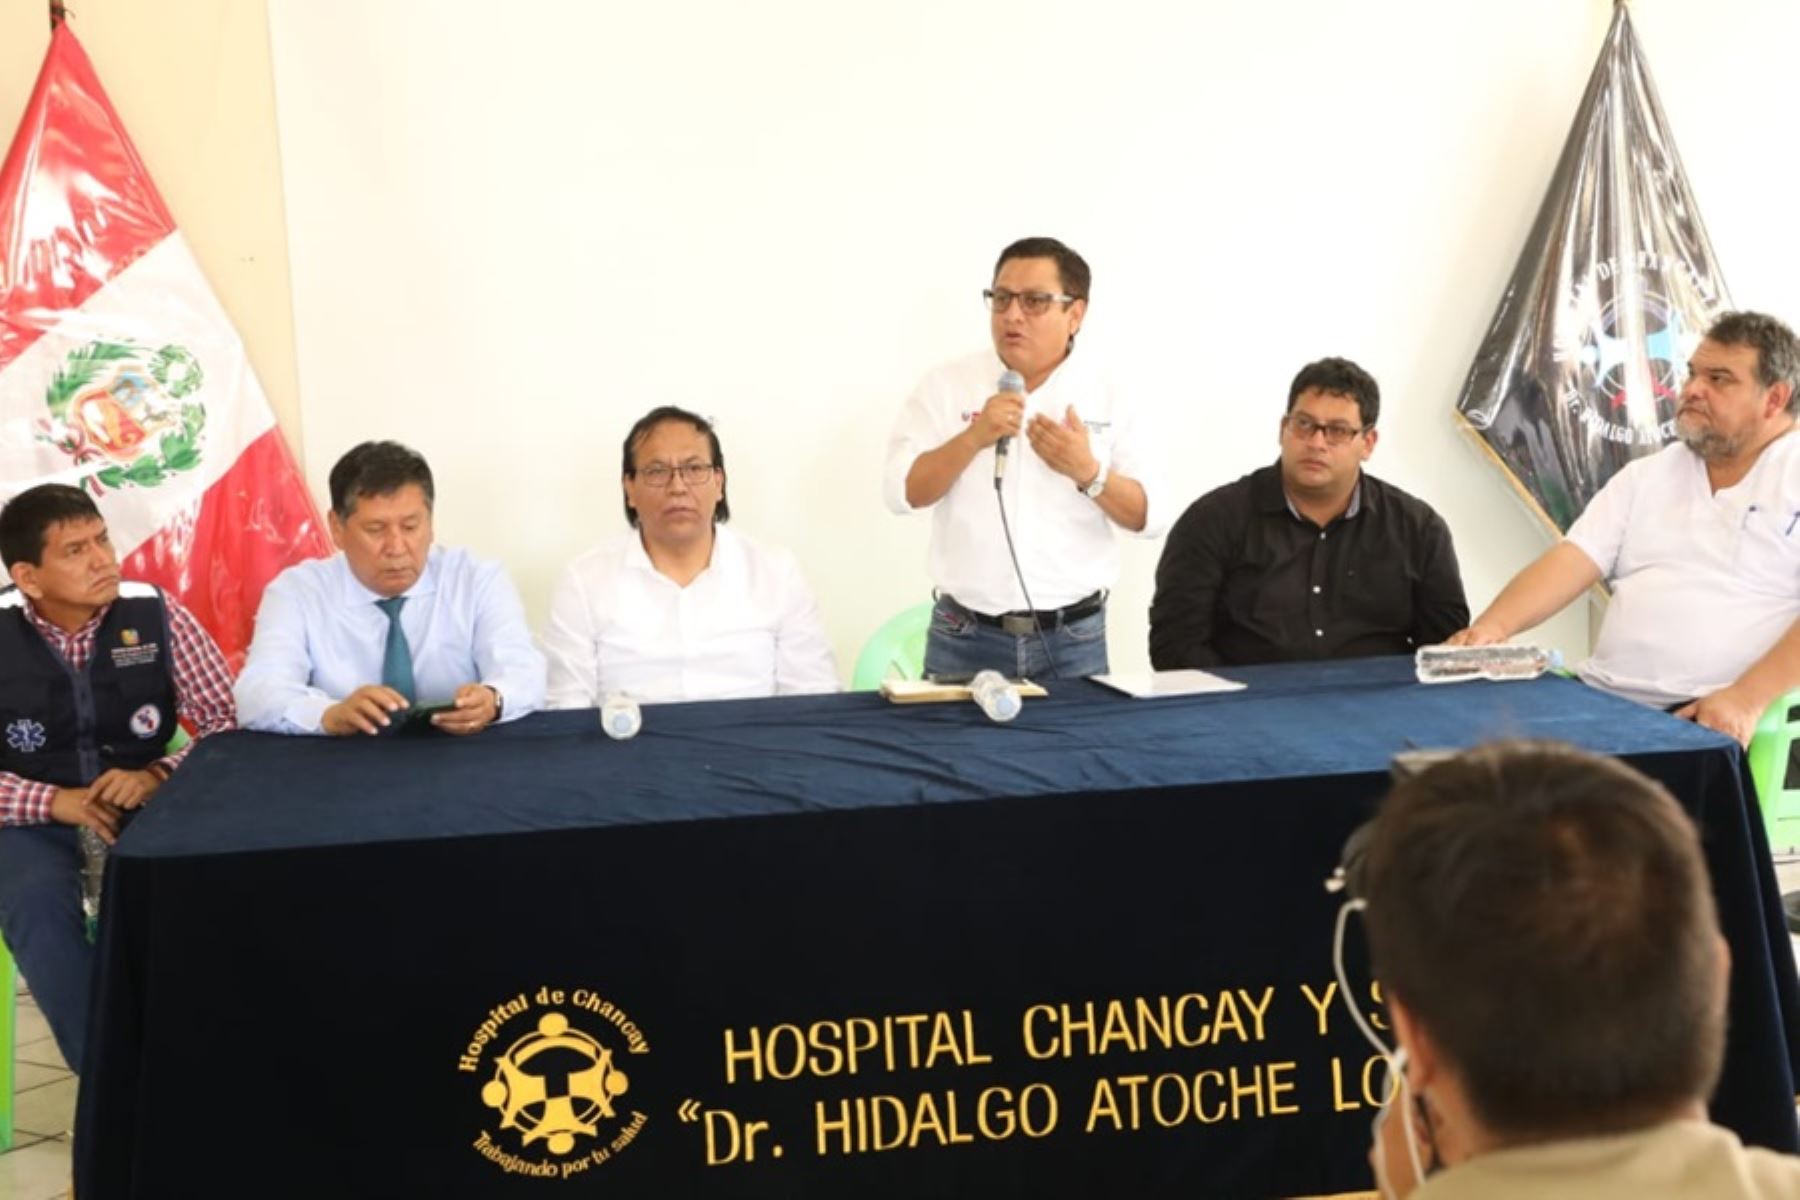 El ministro de Salud, César Vásquez, anunció importantes mejoras para los hospitales del distrito de Chancay y de la provincia de Huaral, en el llamado "norte chico" de Lima, obras que beneficiarán a miles de peruanos.